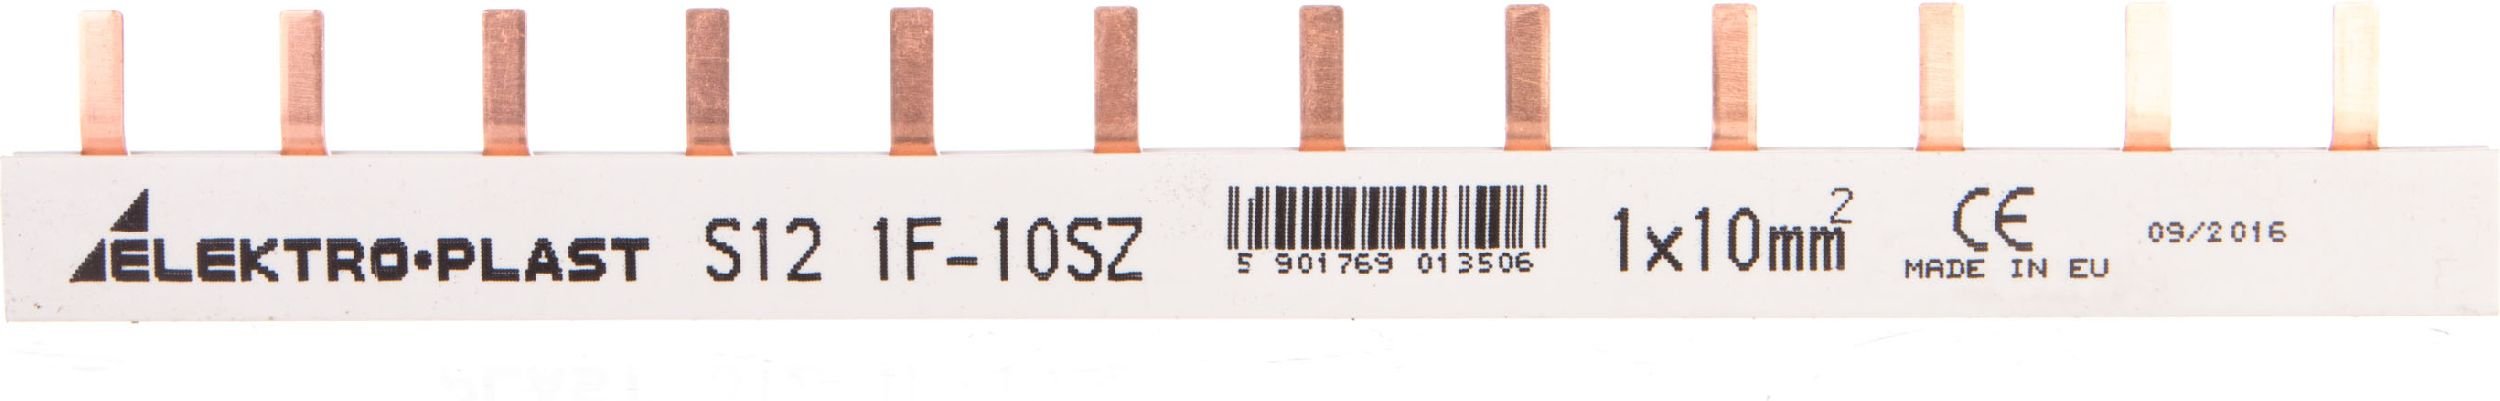 șină 1P tip pin 12 pini 63A 10mm2 IZS10 / 1F / 12 (45202)